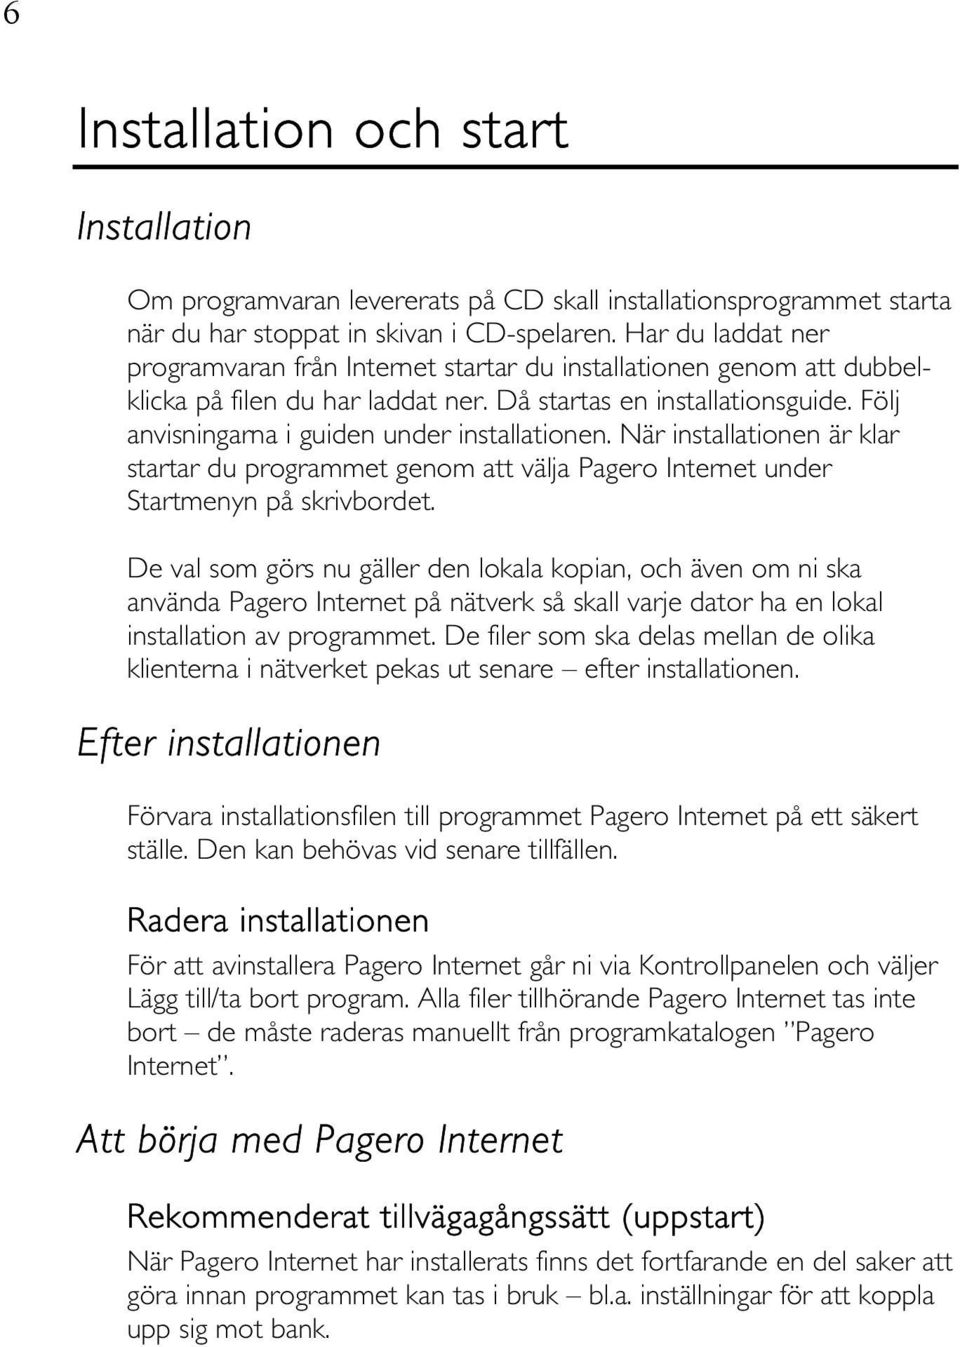 Följ anvisningarna i guiden under installationen. När installationen är klar startar du programmet genom att välja Pagero Internet under Startmenyn på skrivbordet.